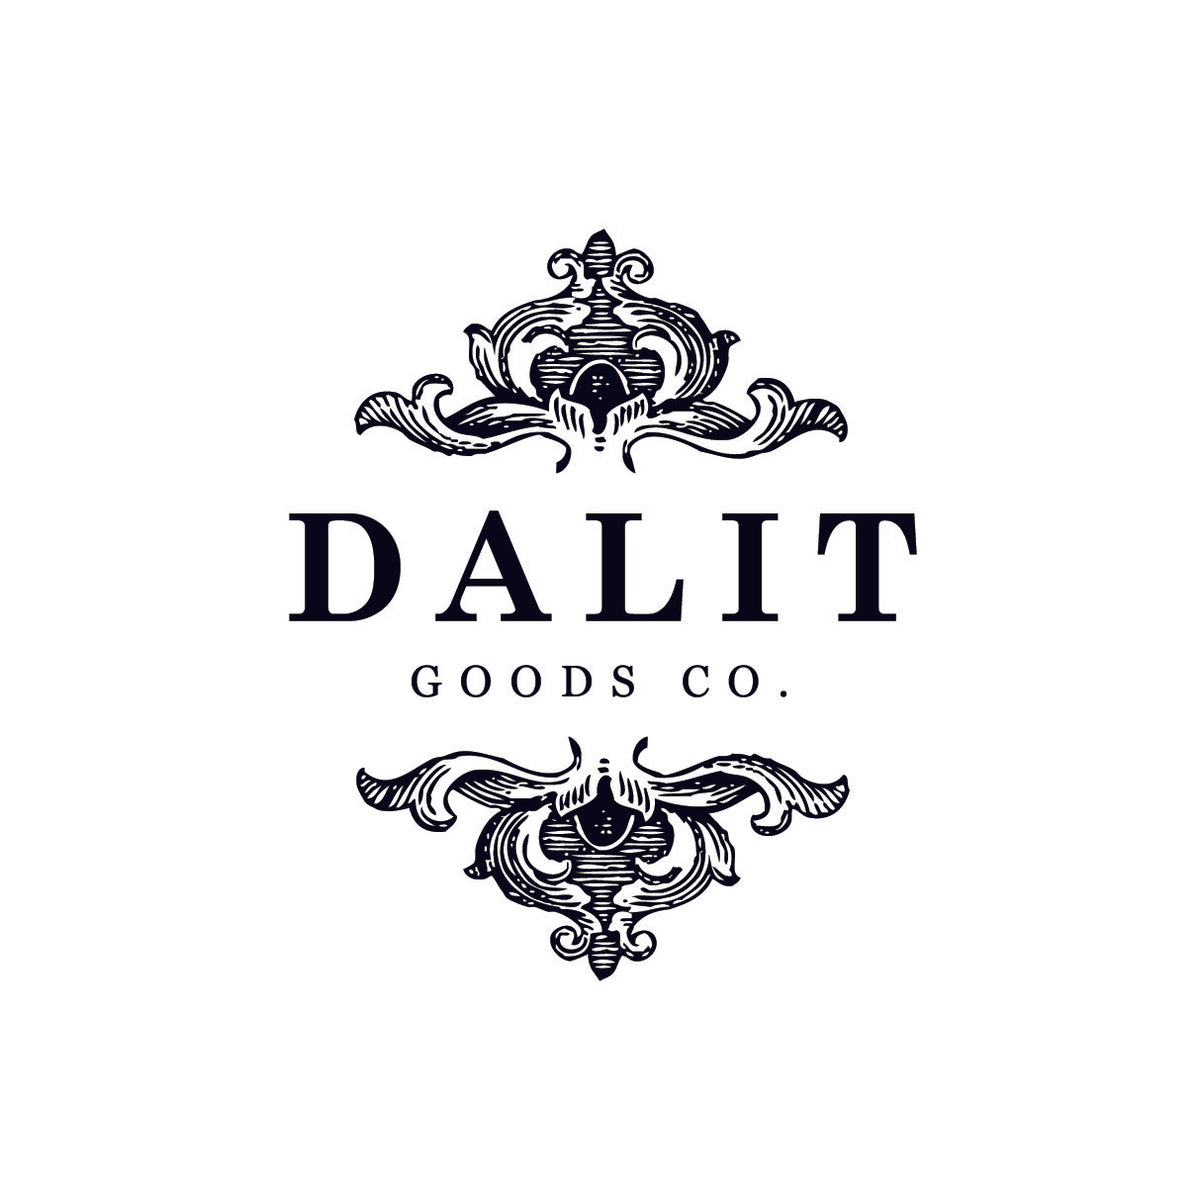 Dalit Goods co. logo.